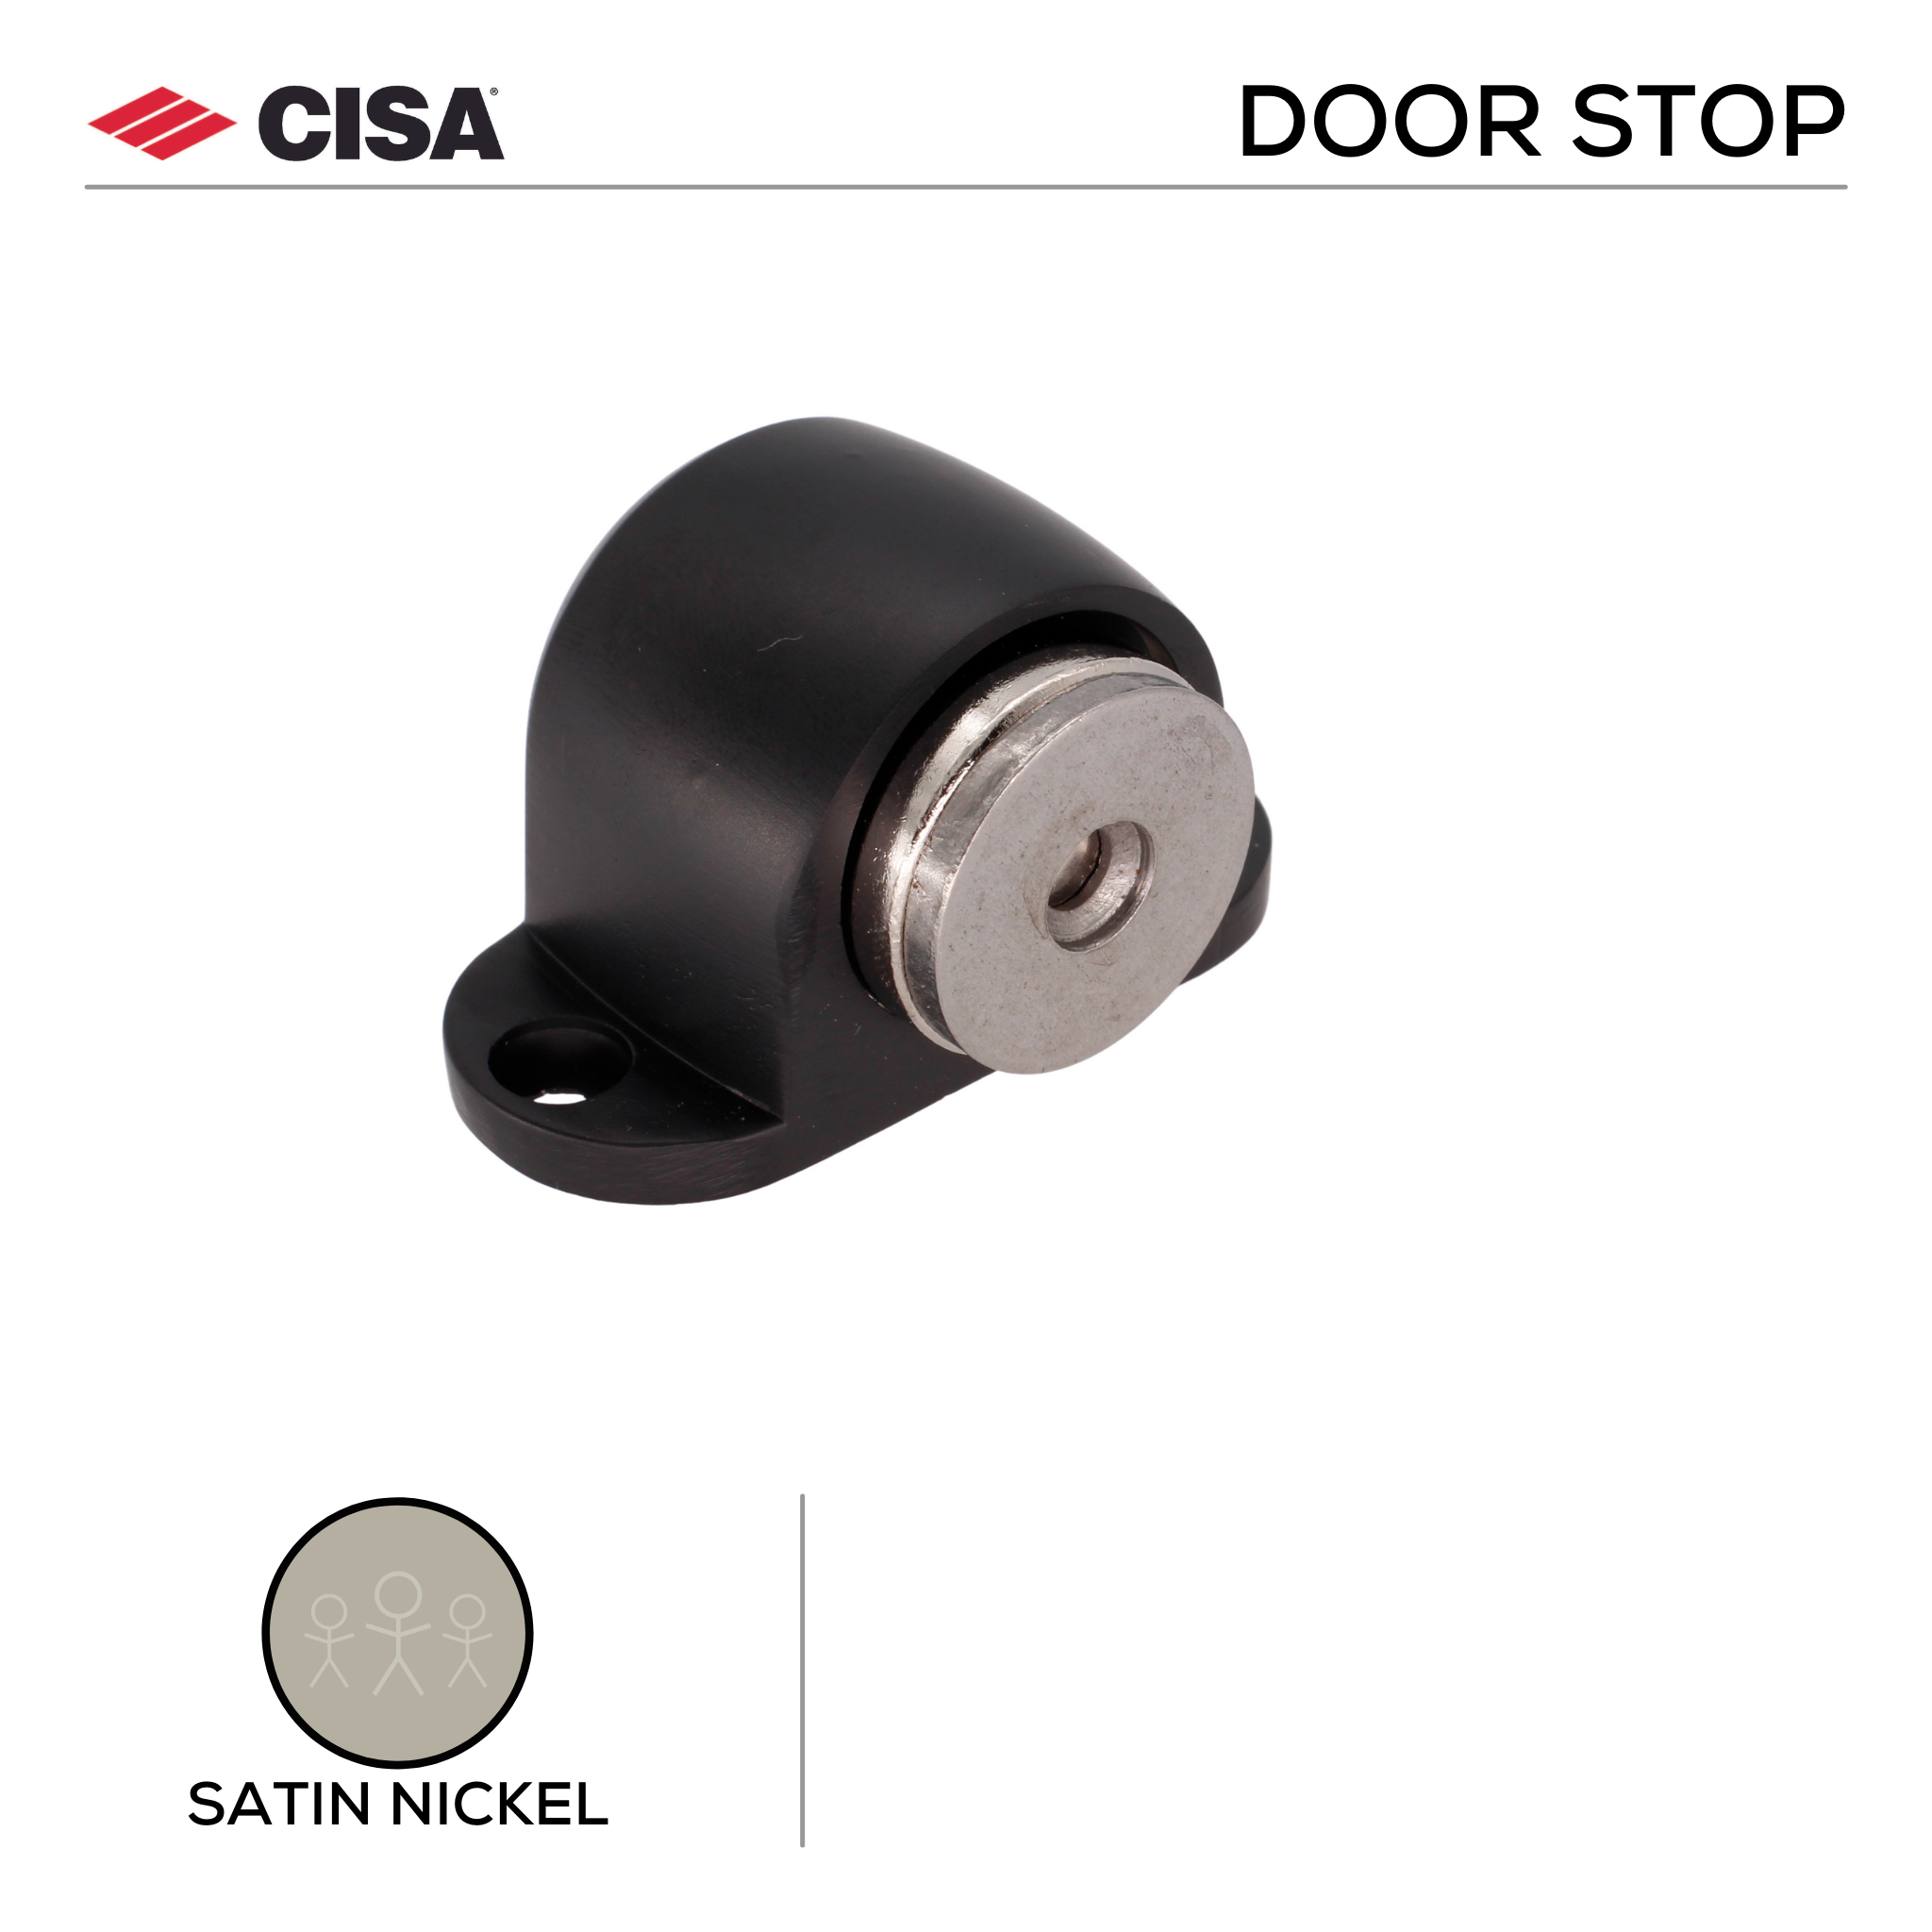 FMDS02.SN, Door Stop, Floor Mounted, Magnetic, 38mm (l) x 55mm (w), Satin Nickel, CISA